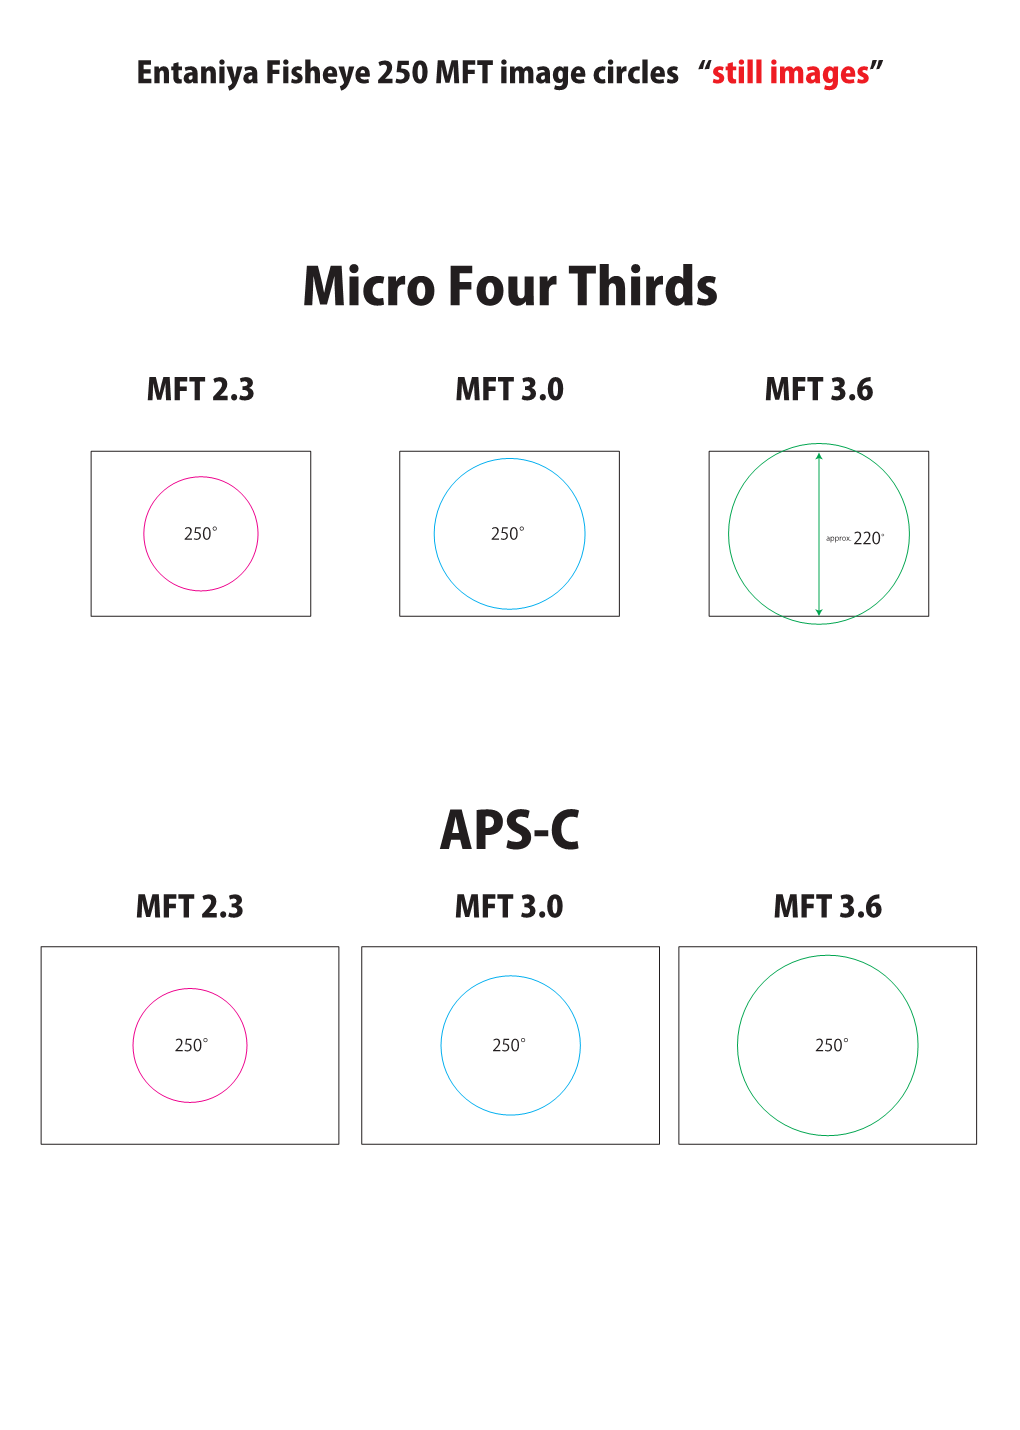 Micro Four Thirds APS-C